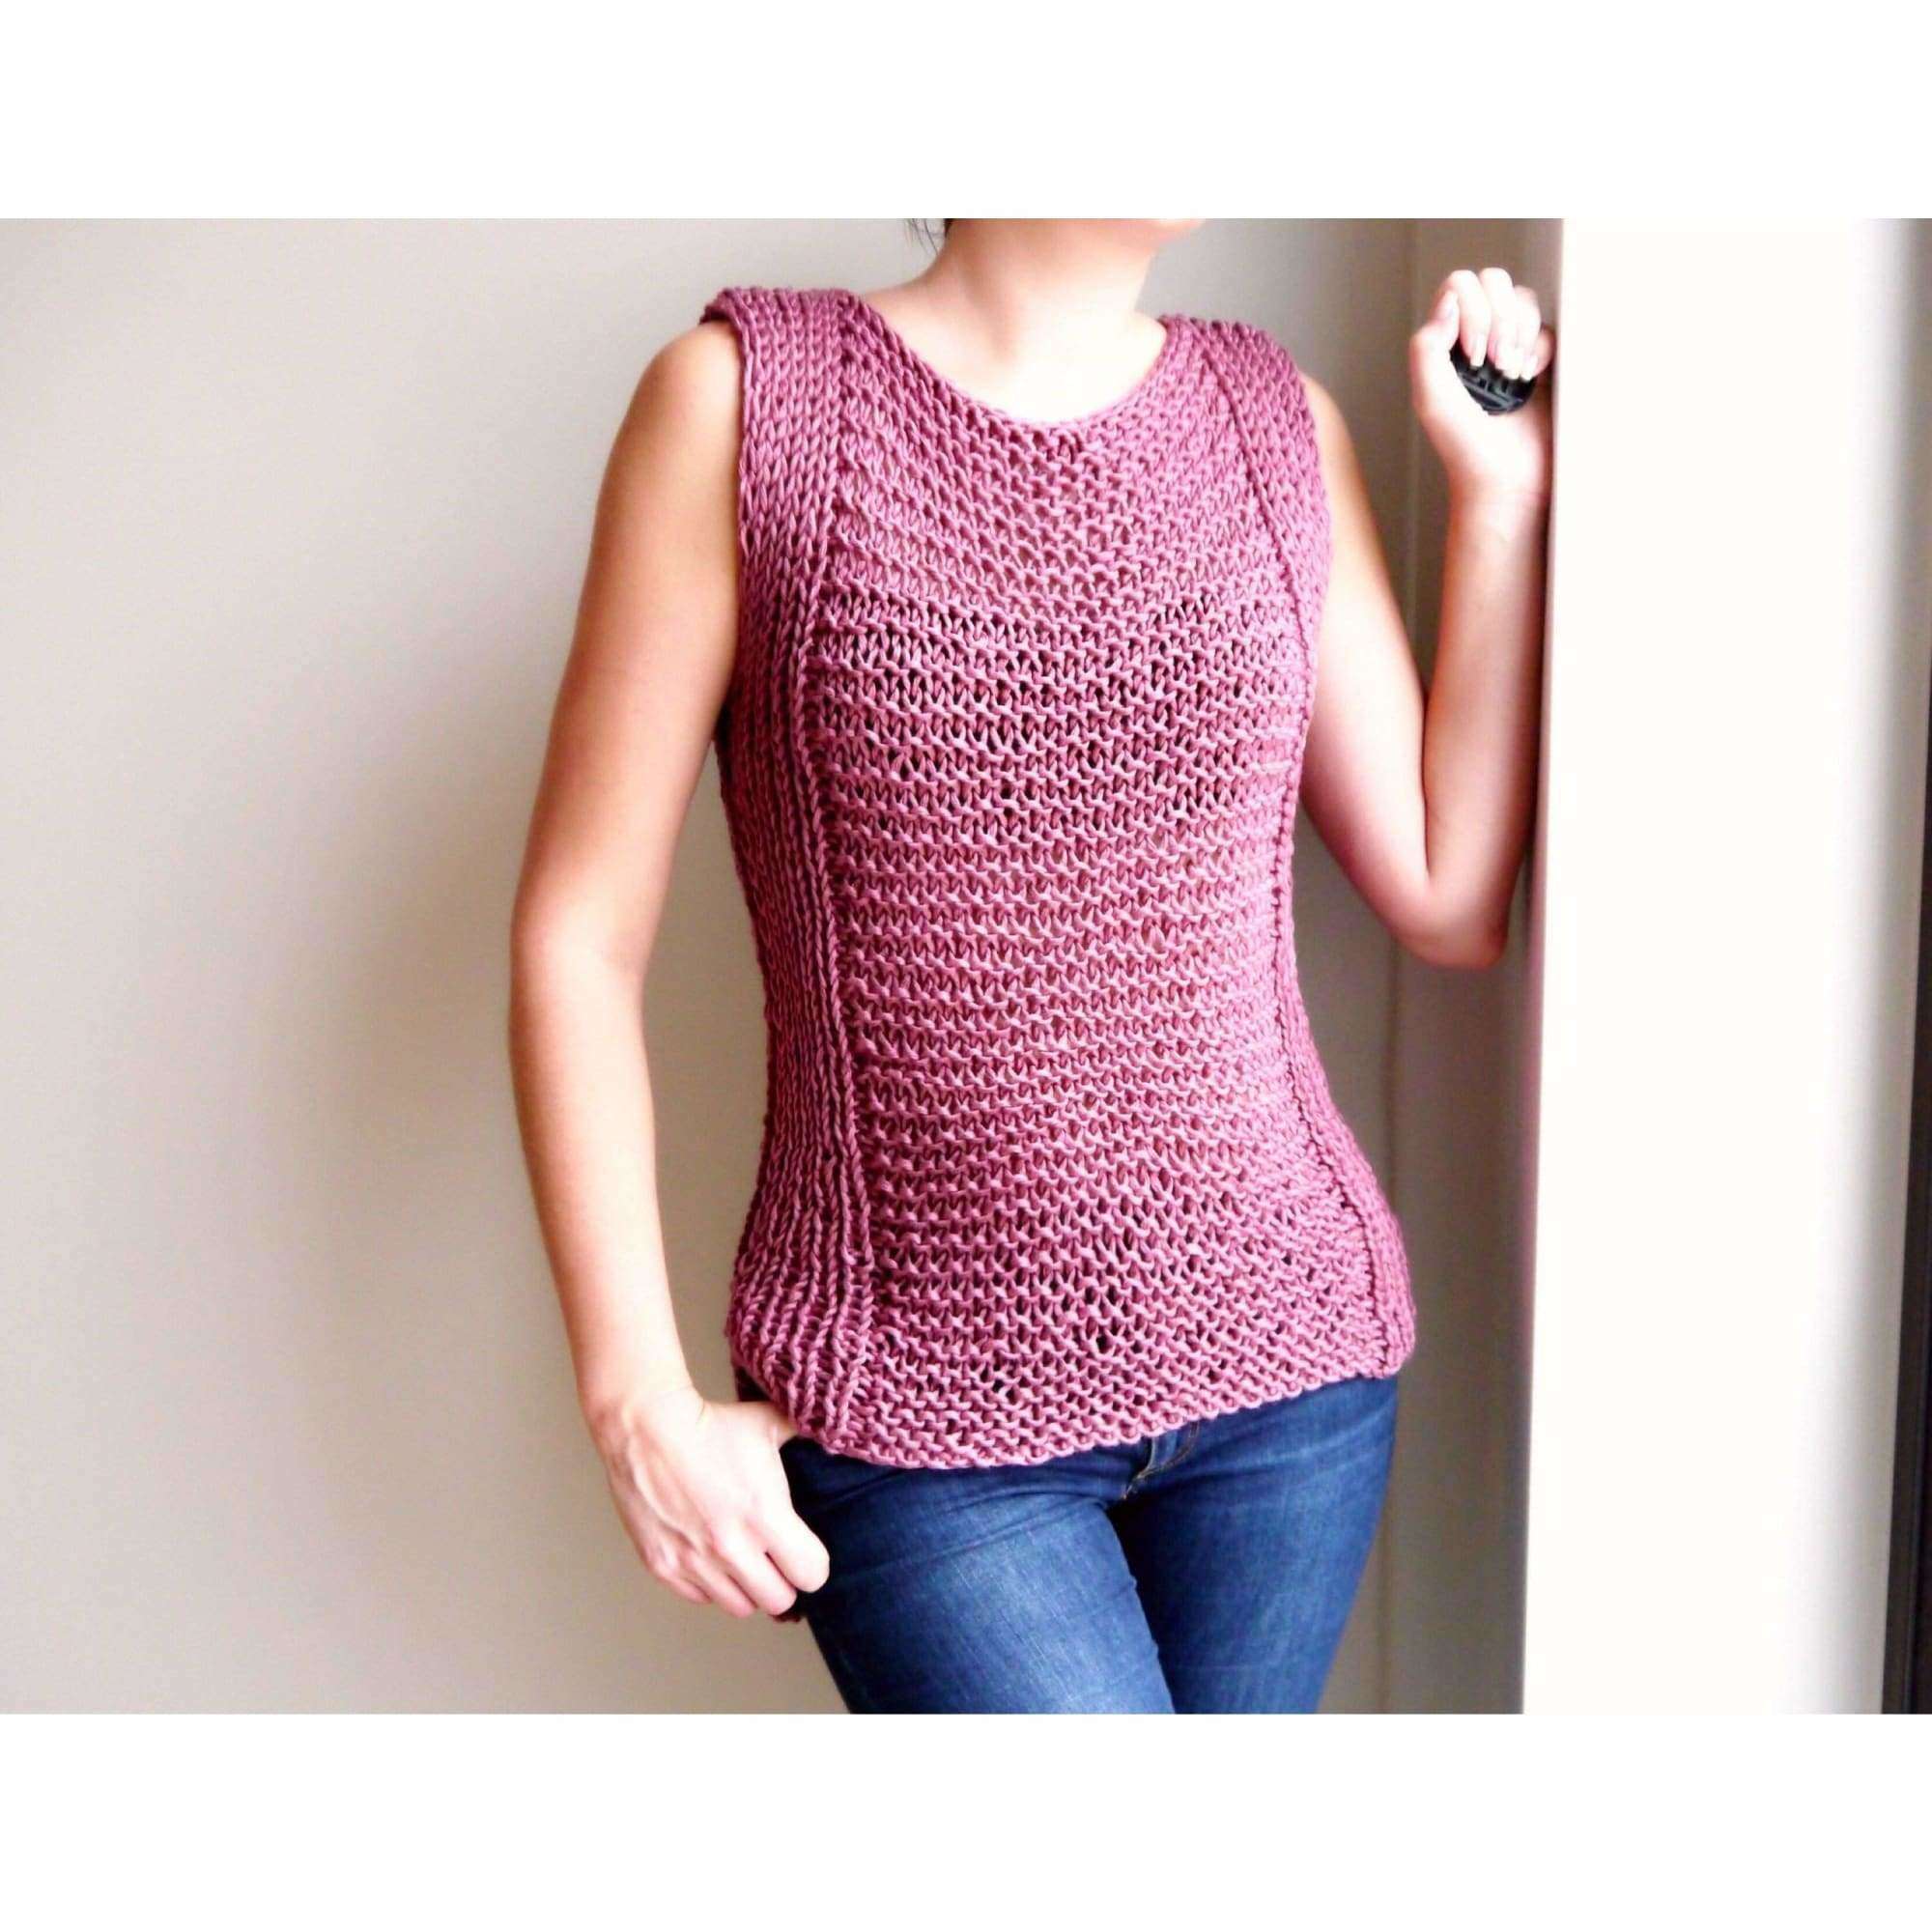 7 Tank Top Knitting Patterns – Knitting